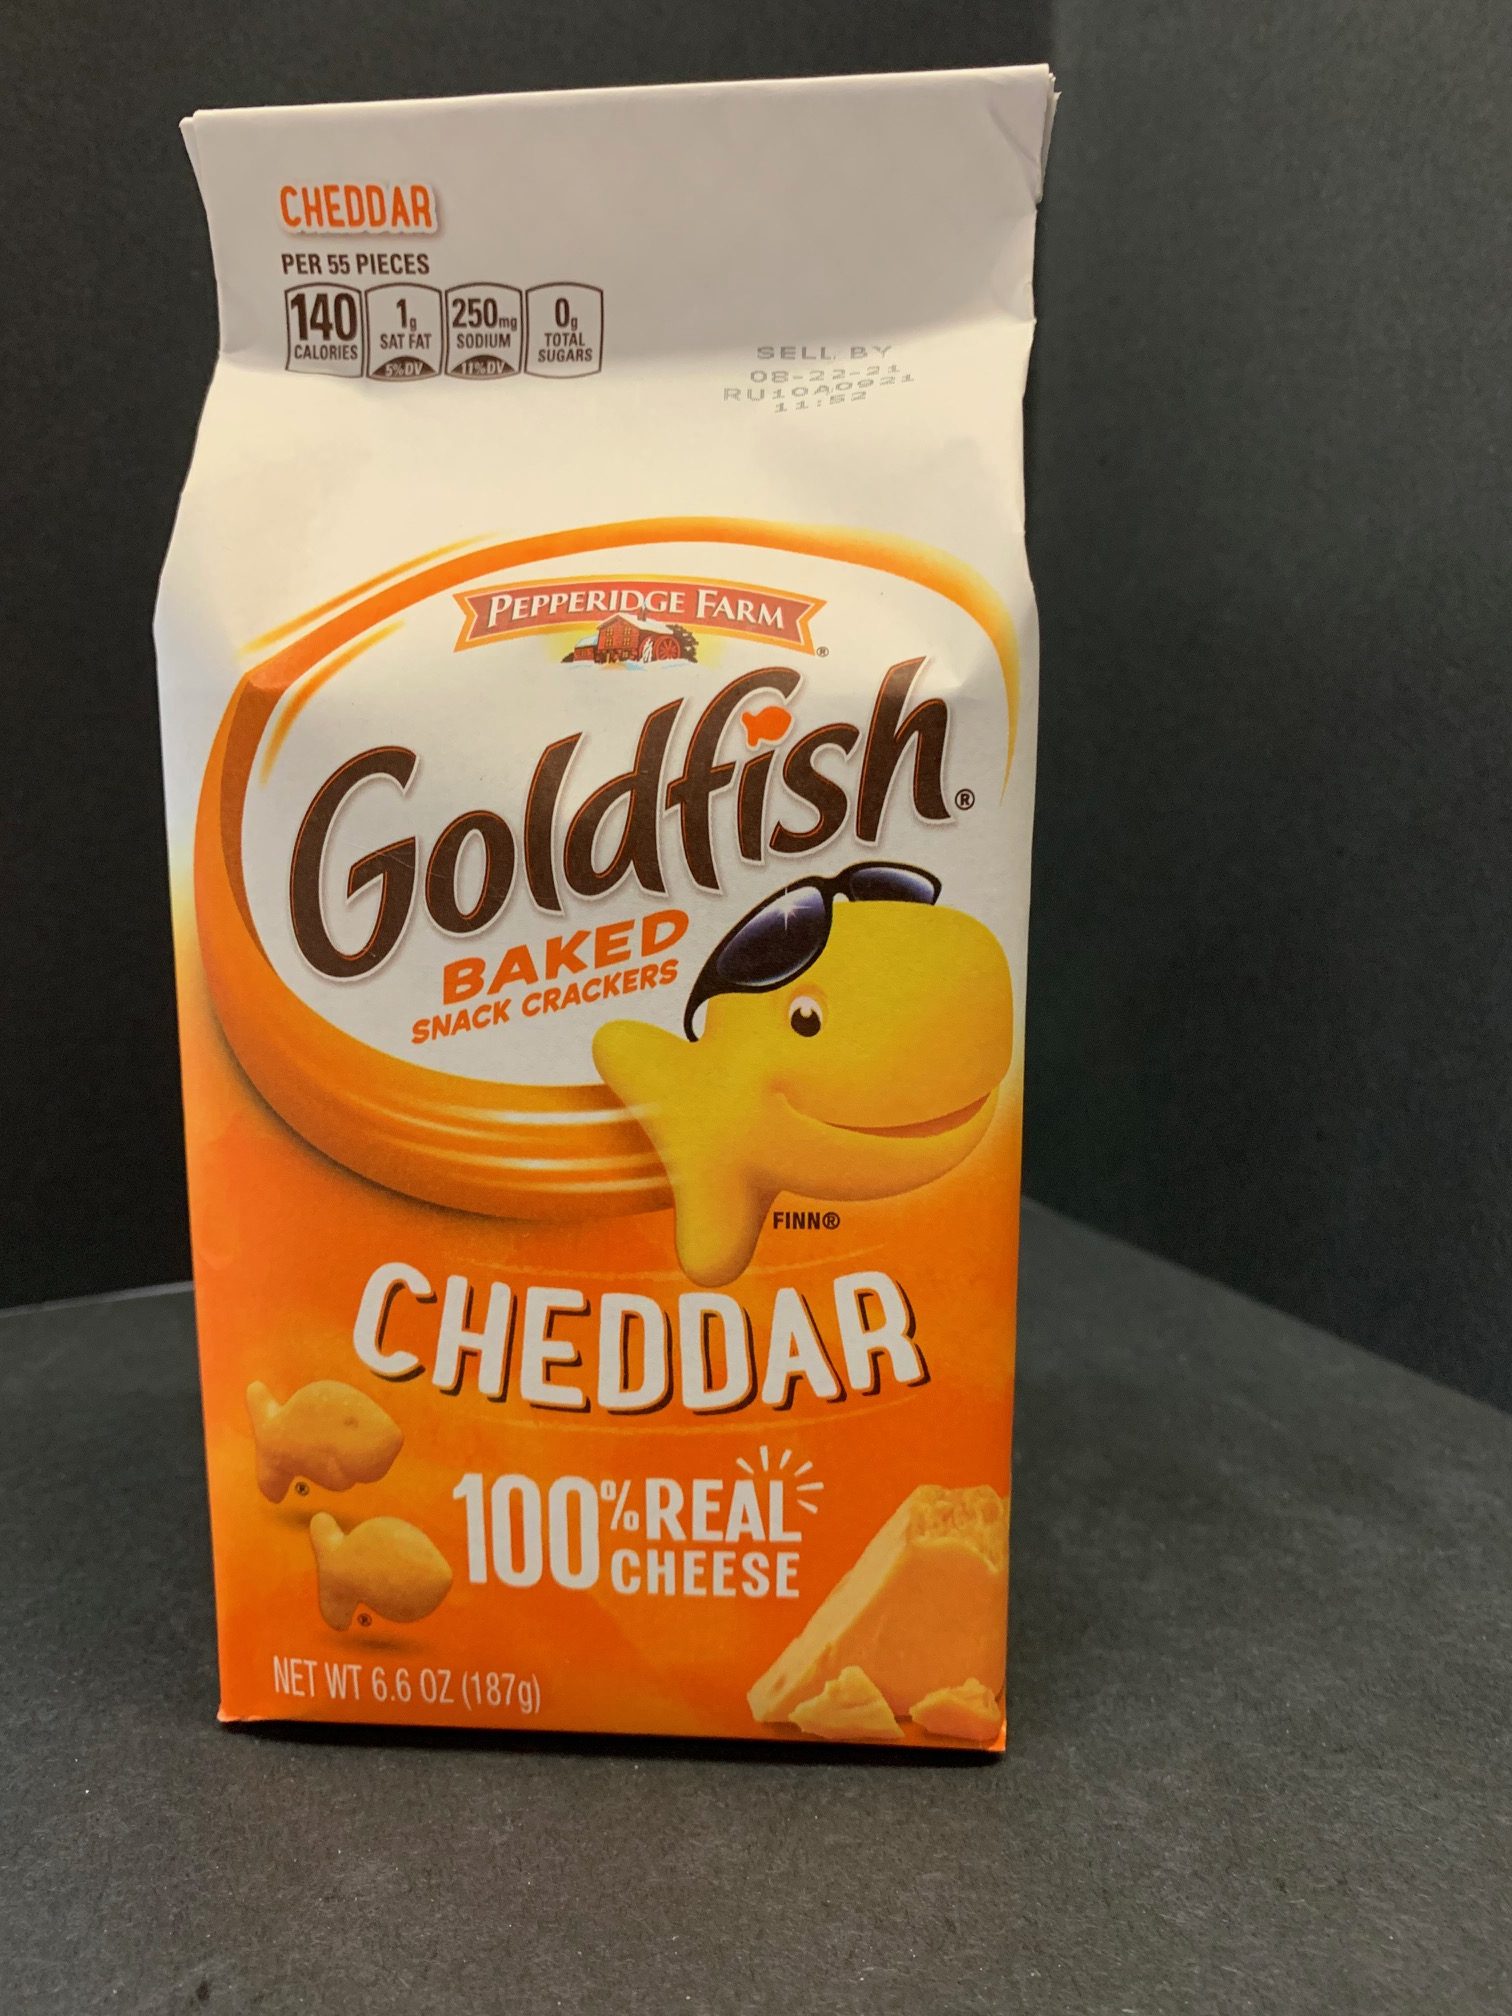 Goldfish cheddar